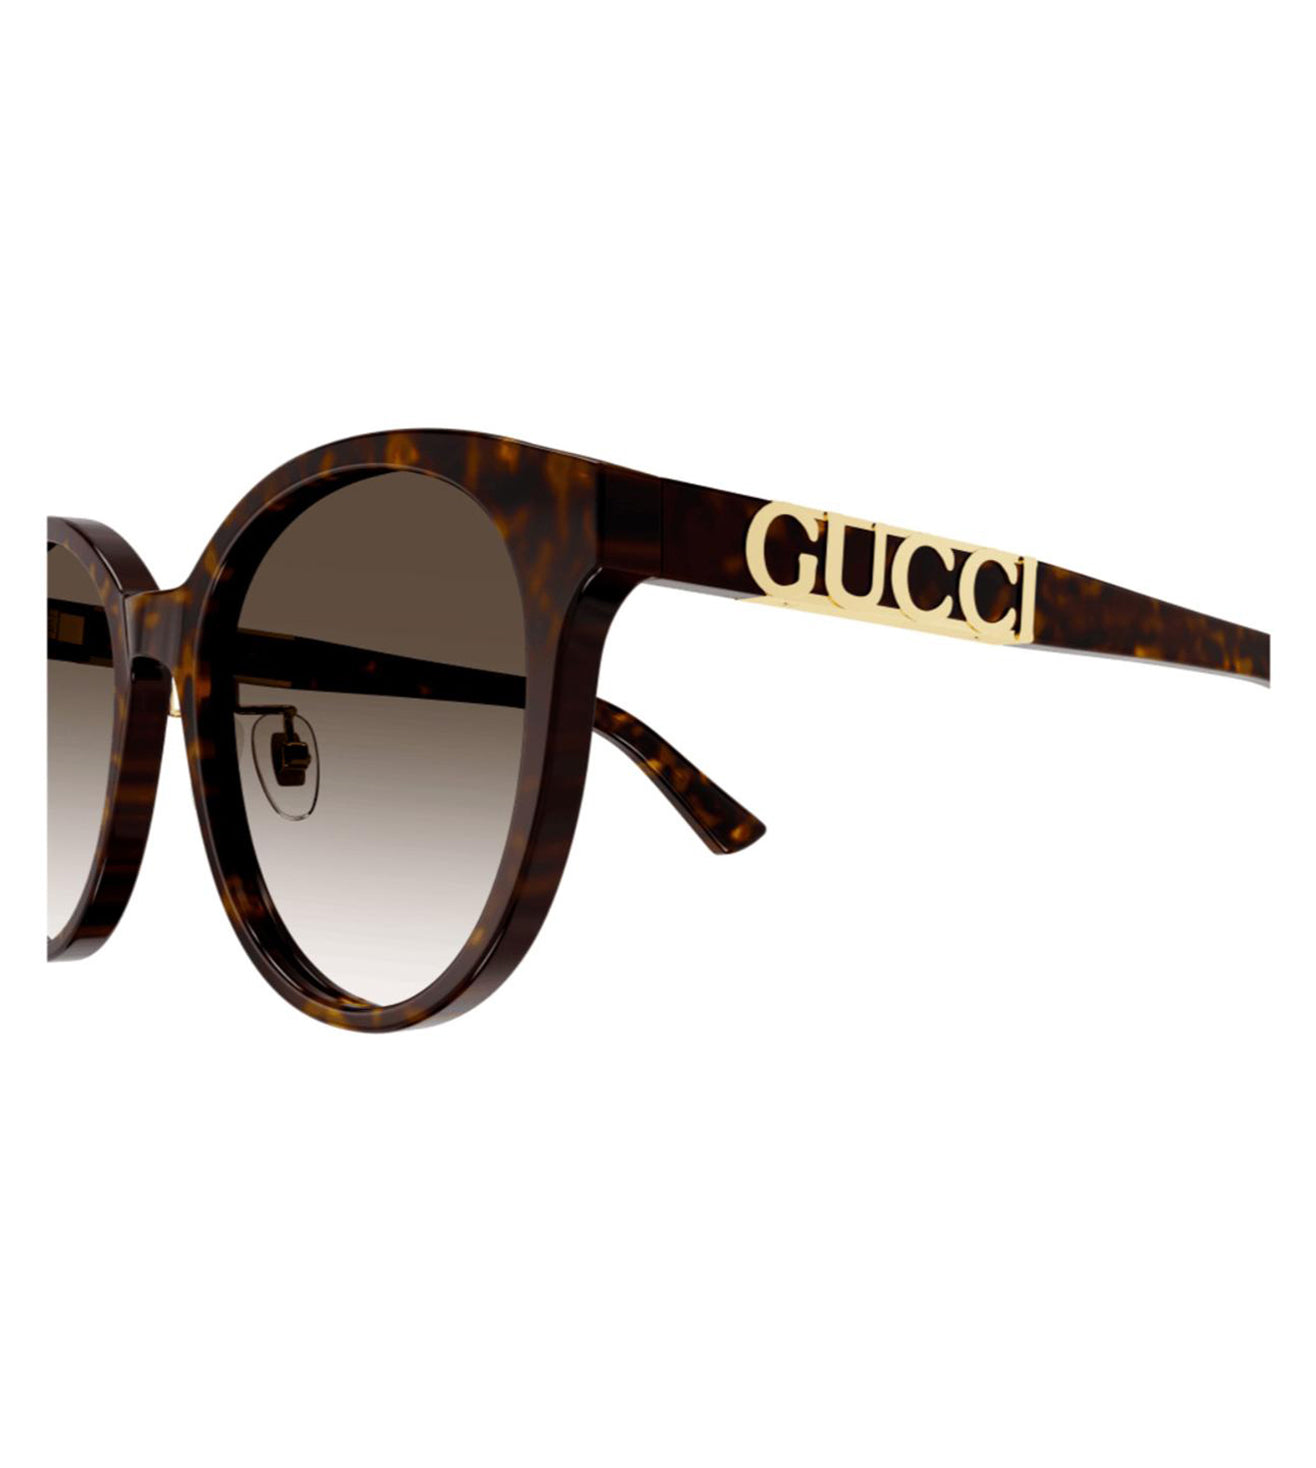 Gucci Women's Brown Round Sunglasses